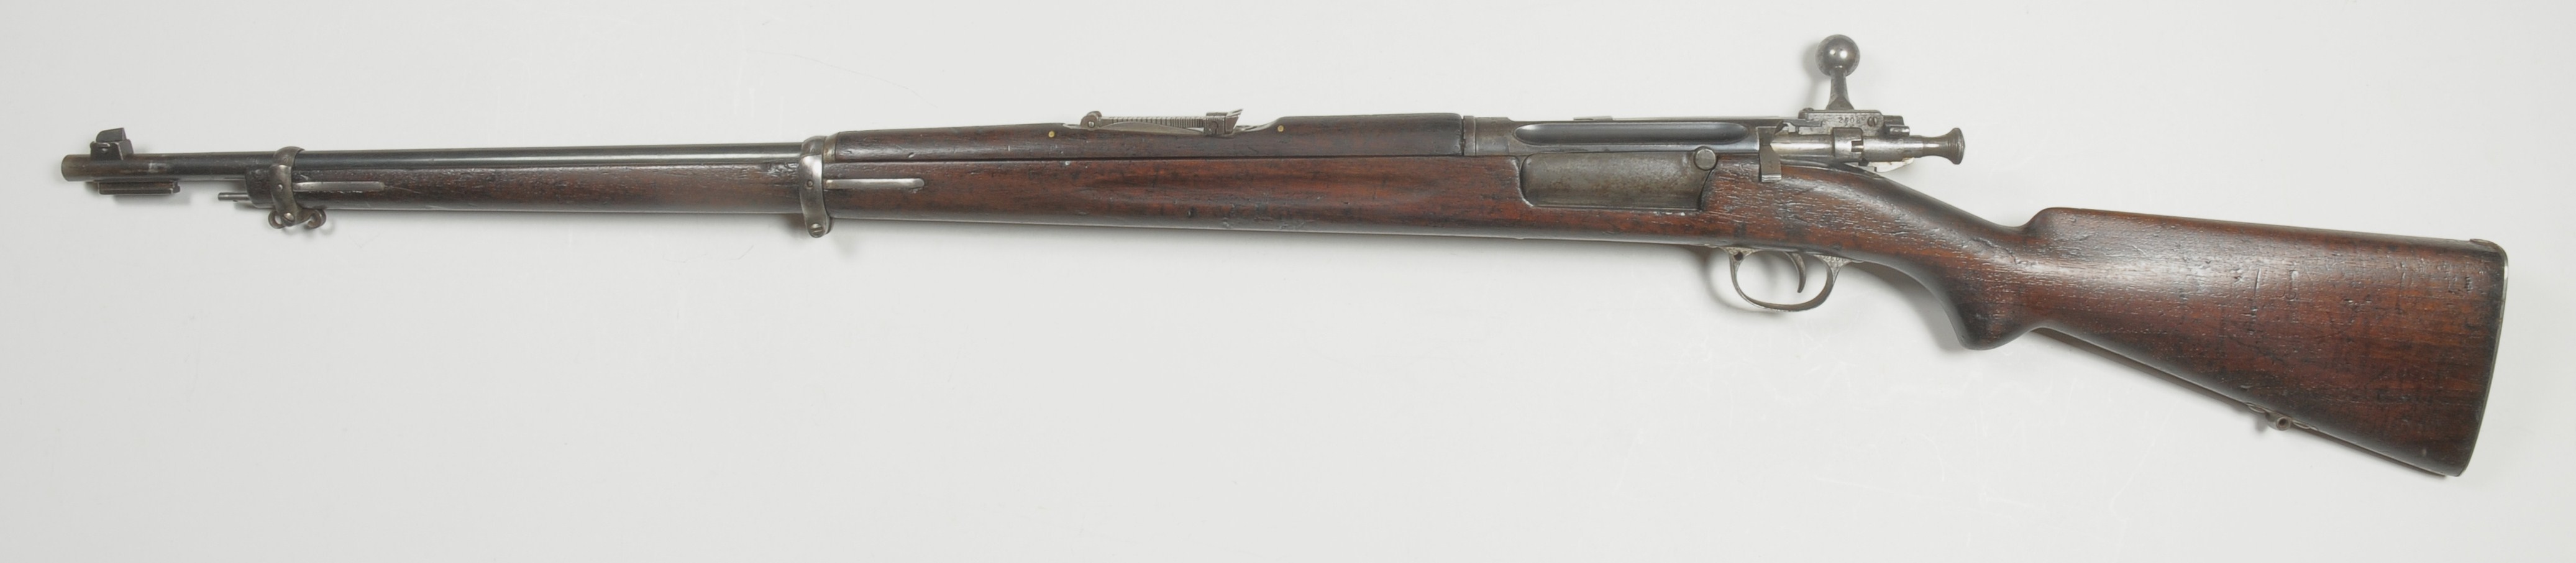 ./guns/rifle/bilder/Rifle-Kongsberg-Krag-M1894-Marine-2608-2.jpg